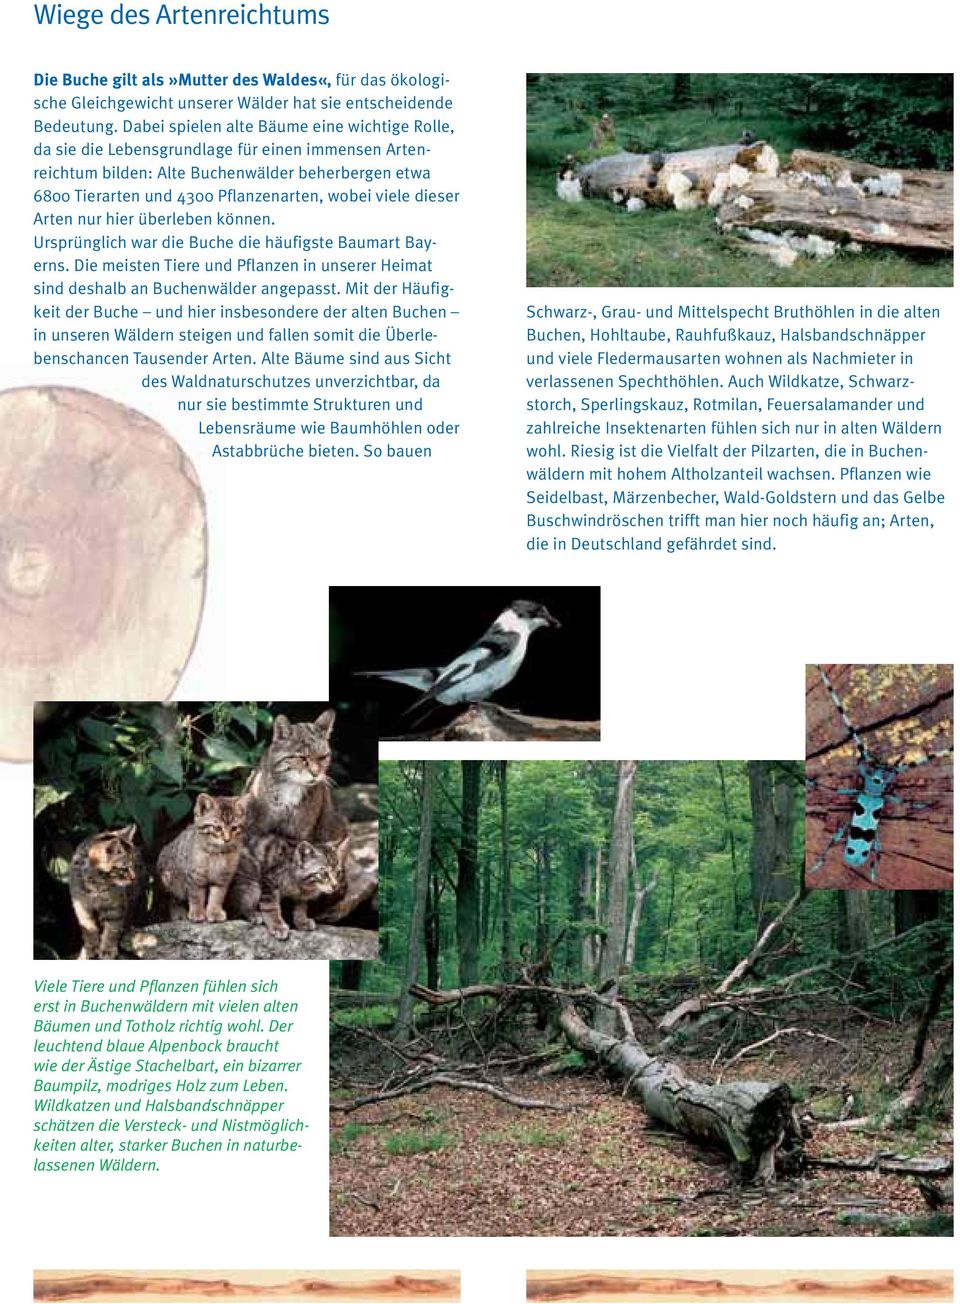 dieser Arten nur hier überleben können. Ursprünglich war die Buche die häufigste Baumart Bayerns. Die meisten Tiere und Pflanzen in unserer Heimat sind deshalb an Buchenwälder angepasst.